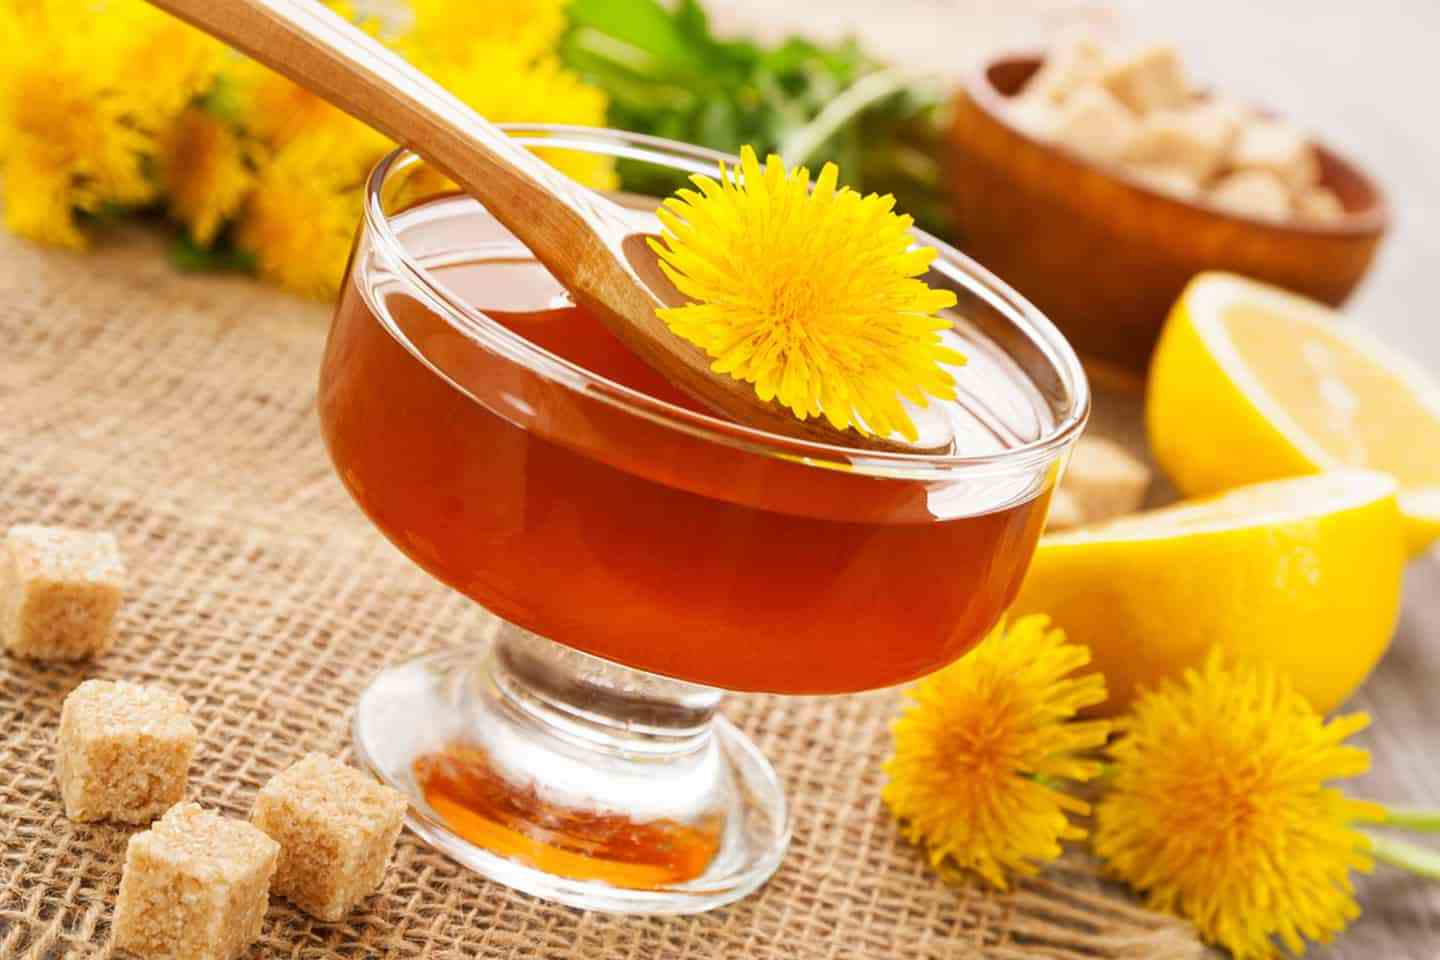 Chá Dandelion: O Que Serve, Benefícios, Efeitos Colaterais (+ Receitas)